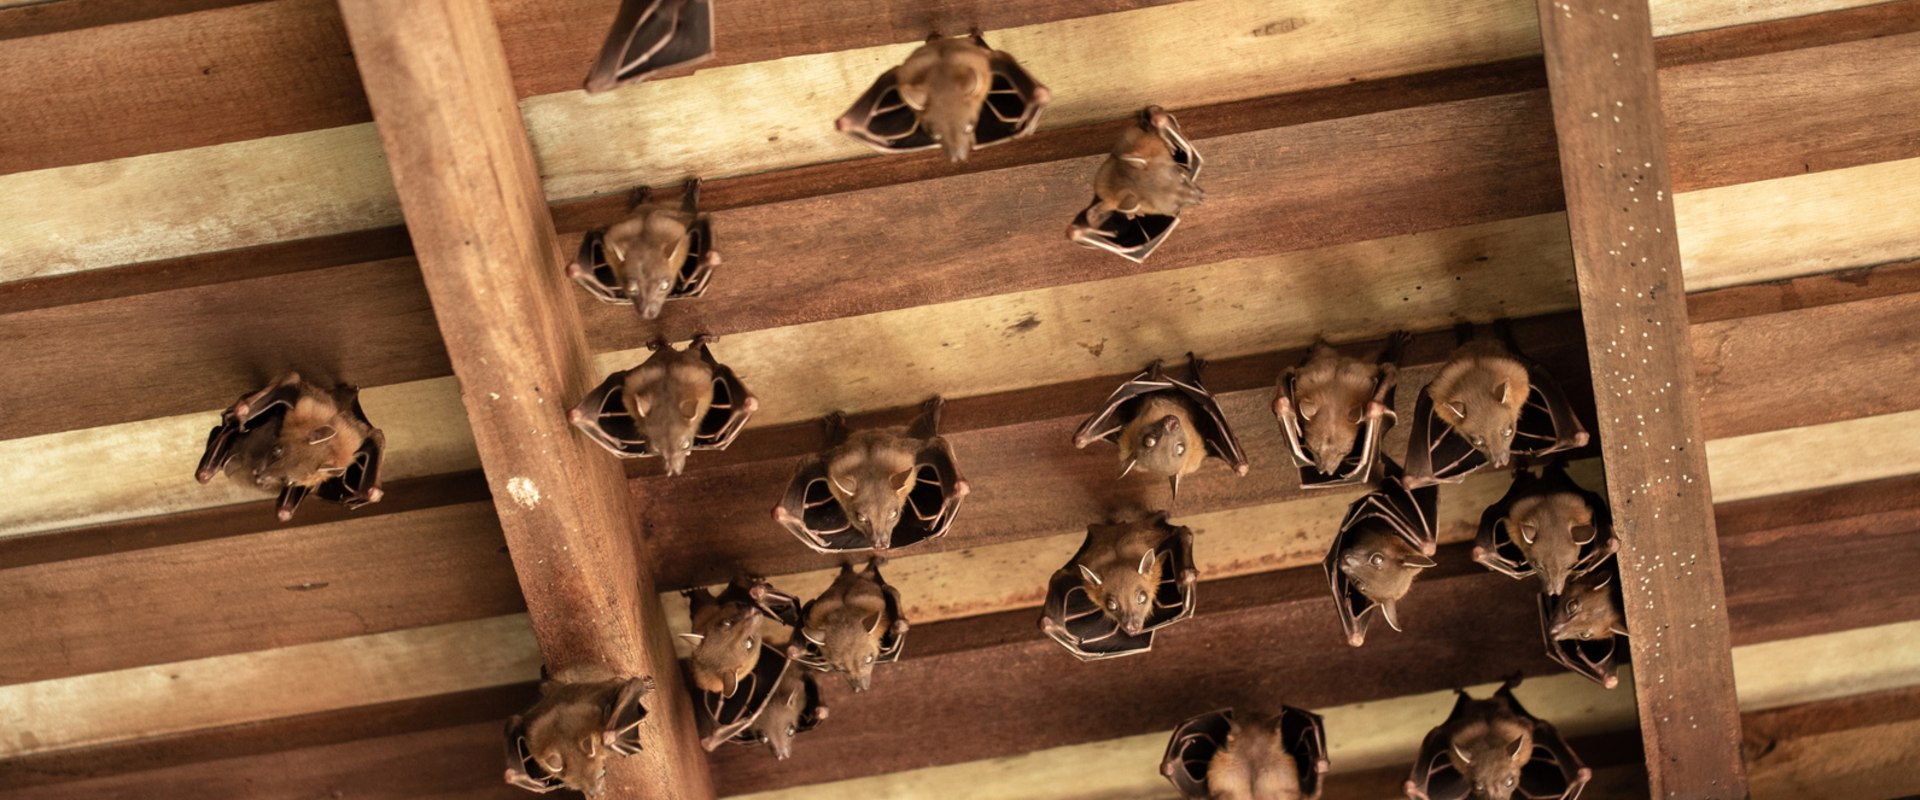 How many bats in attic?